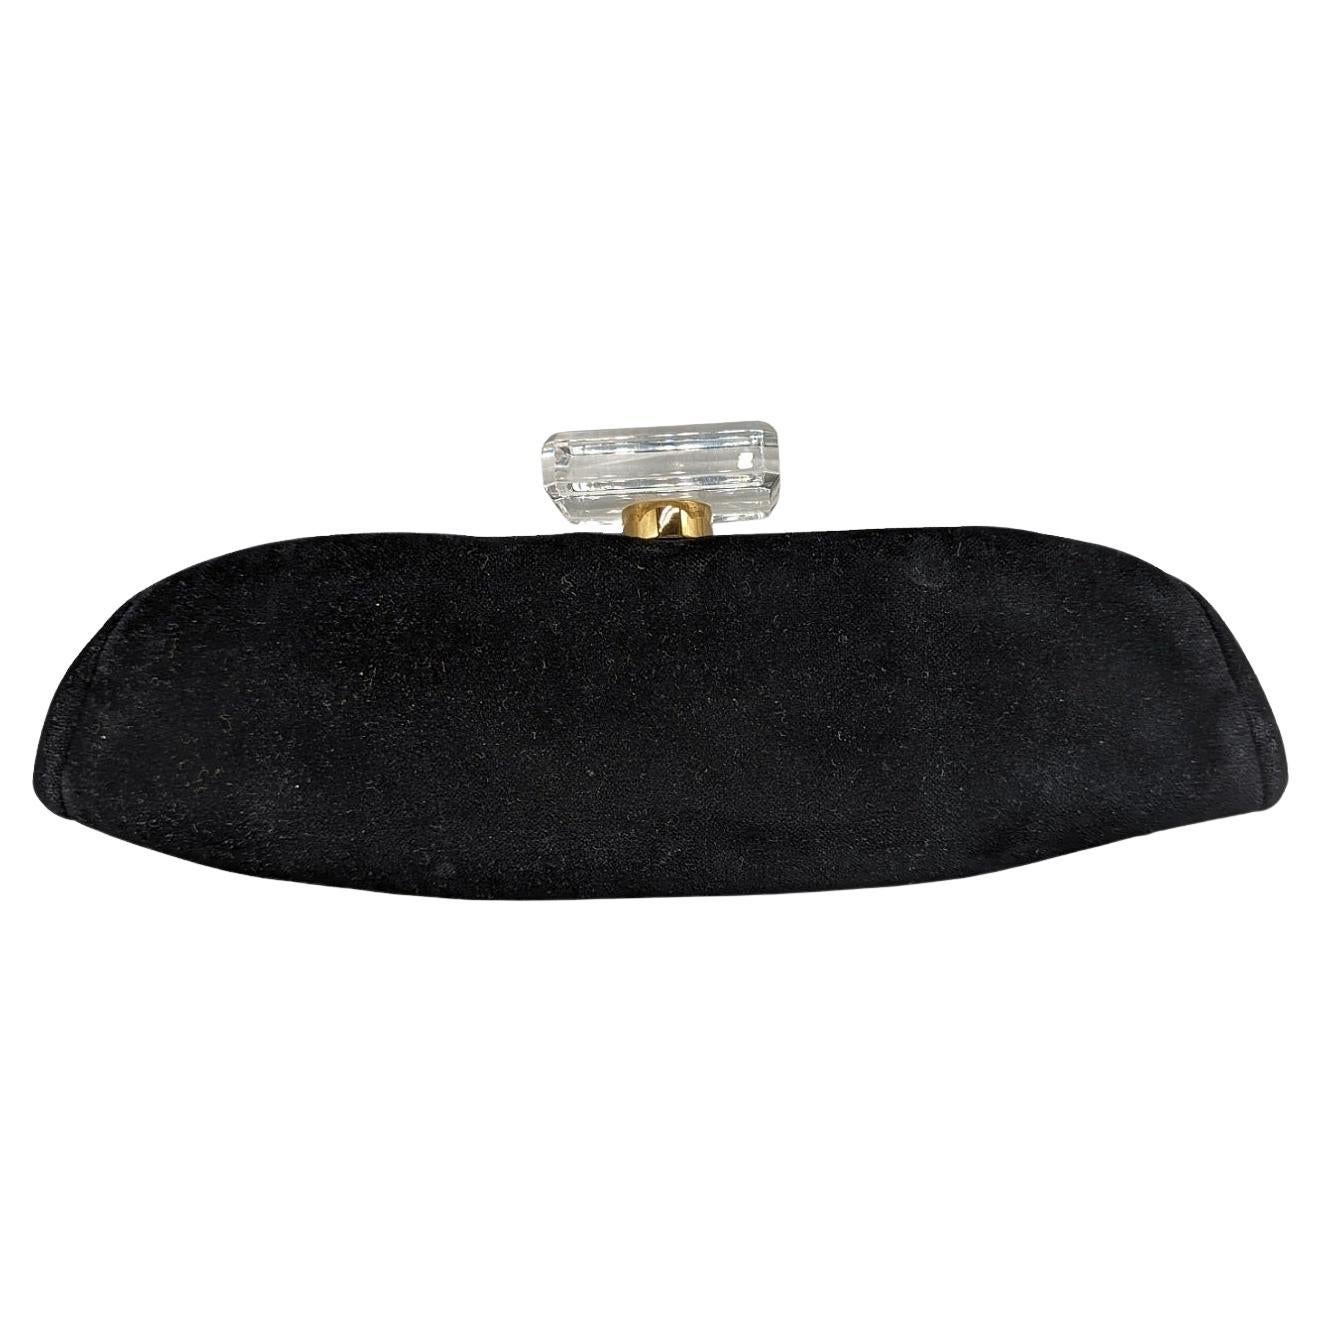 Pochette Chanel en velours noir à armature avec quincaillerie dorée, doublure en cuir ton sur ton, pochette à glissière unique sur la paroi intérieure et fermeture à glissière en plexiglas accentuée par le logo CC sur l'armature supérieure en forme